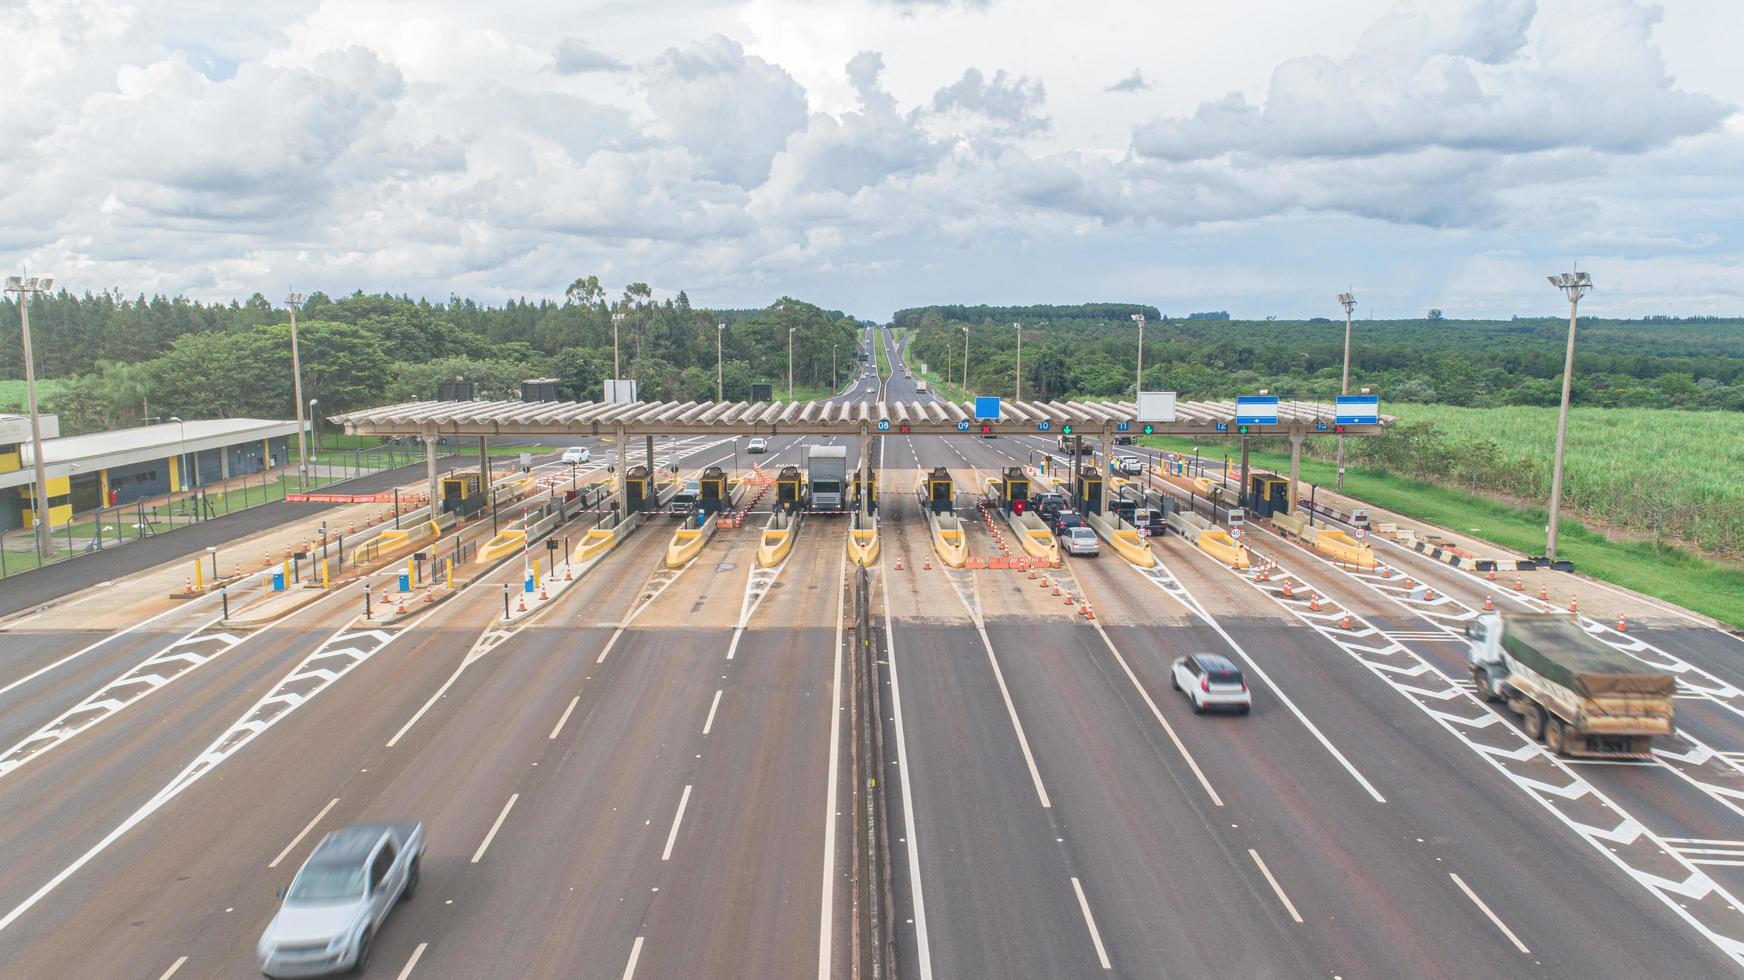 san paolo, brasile, gennaio 2019 - veduta aerea di un pedaggio autostradale foto